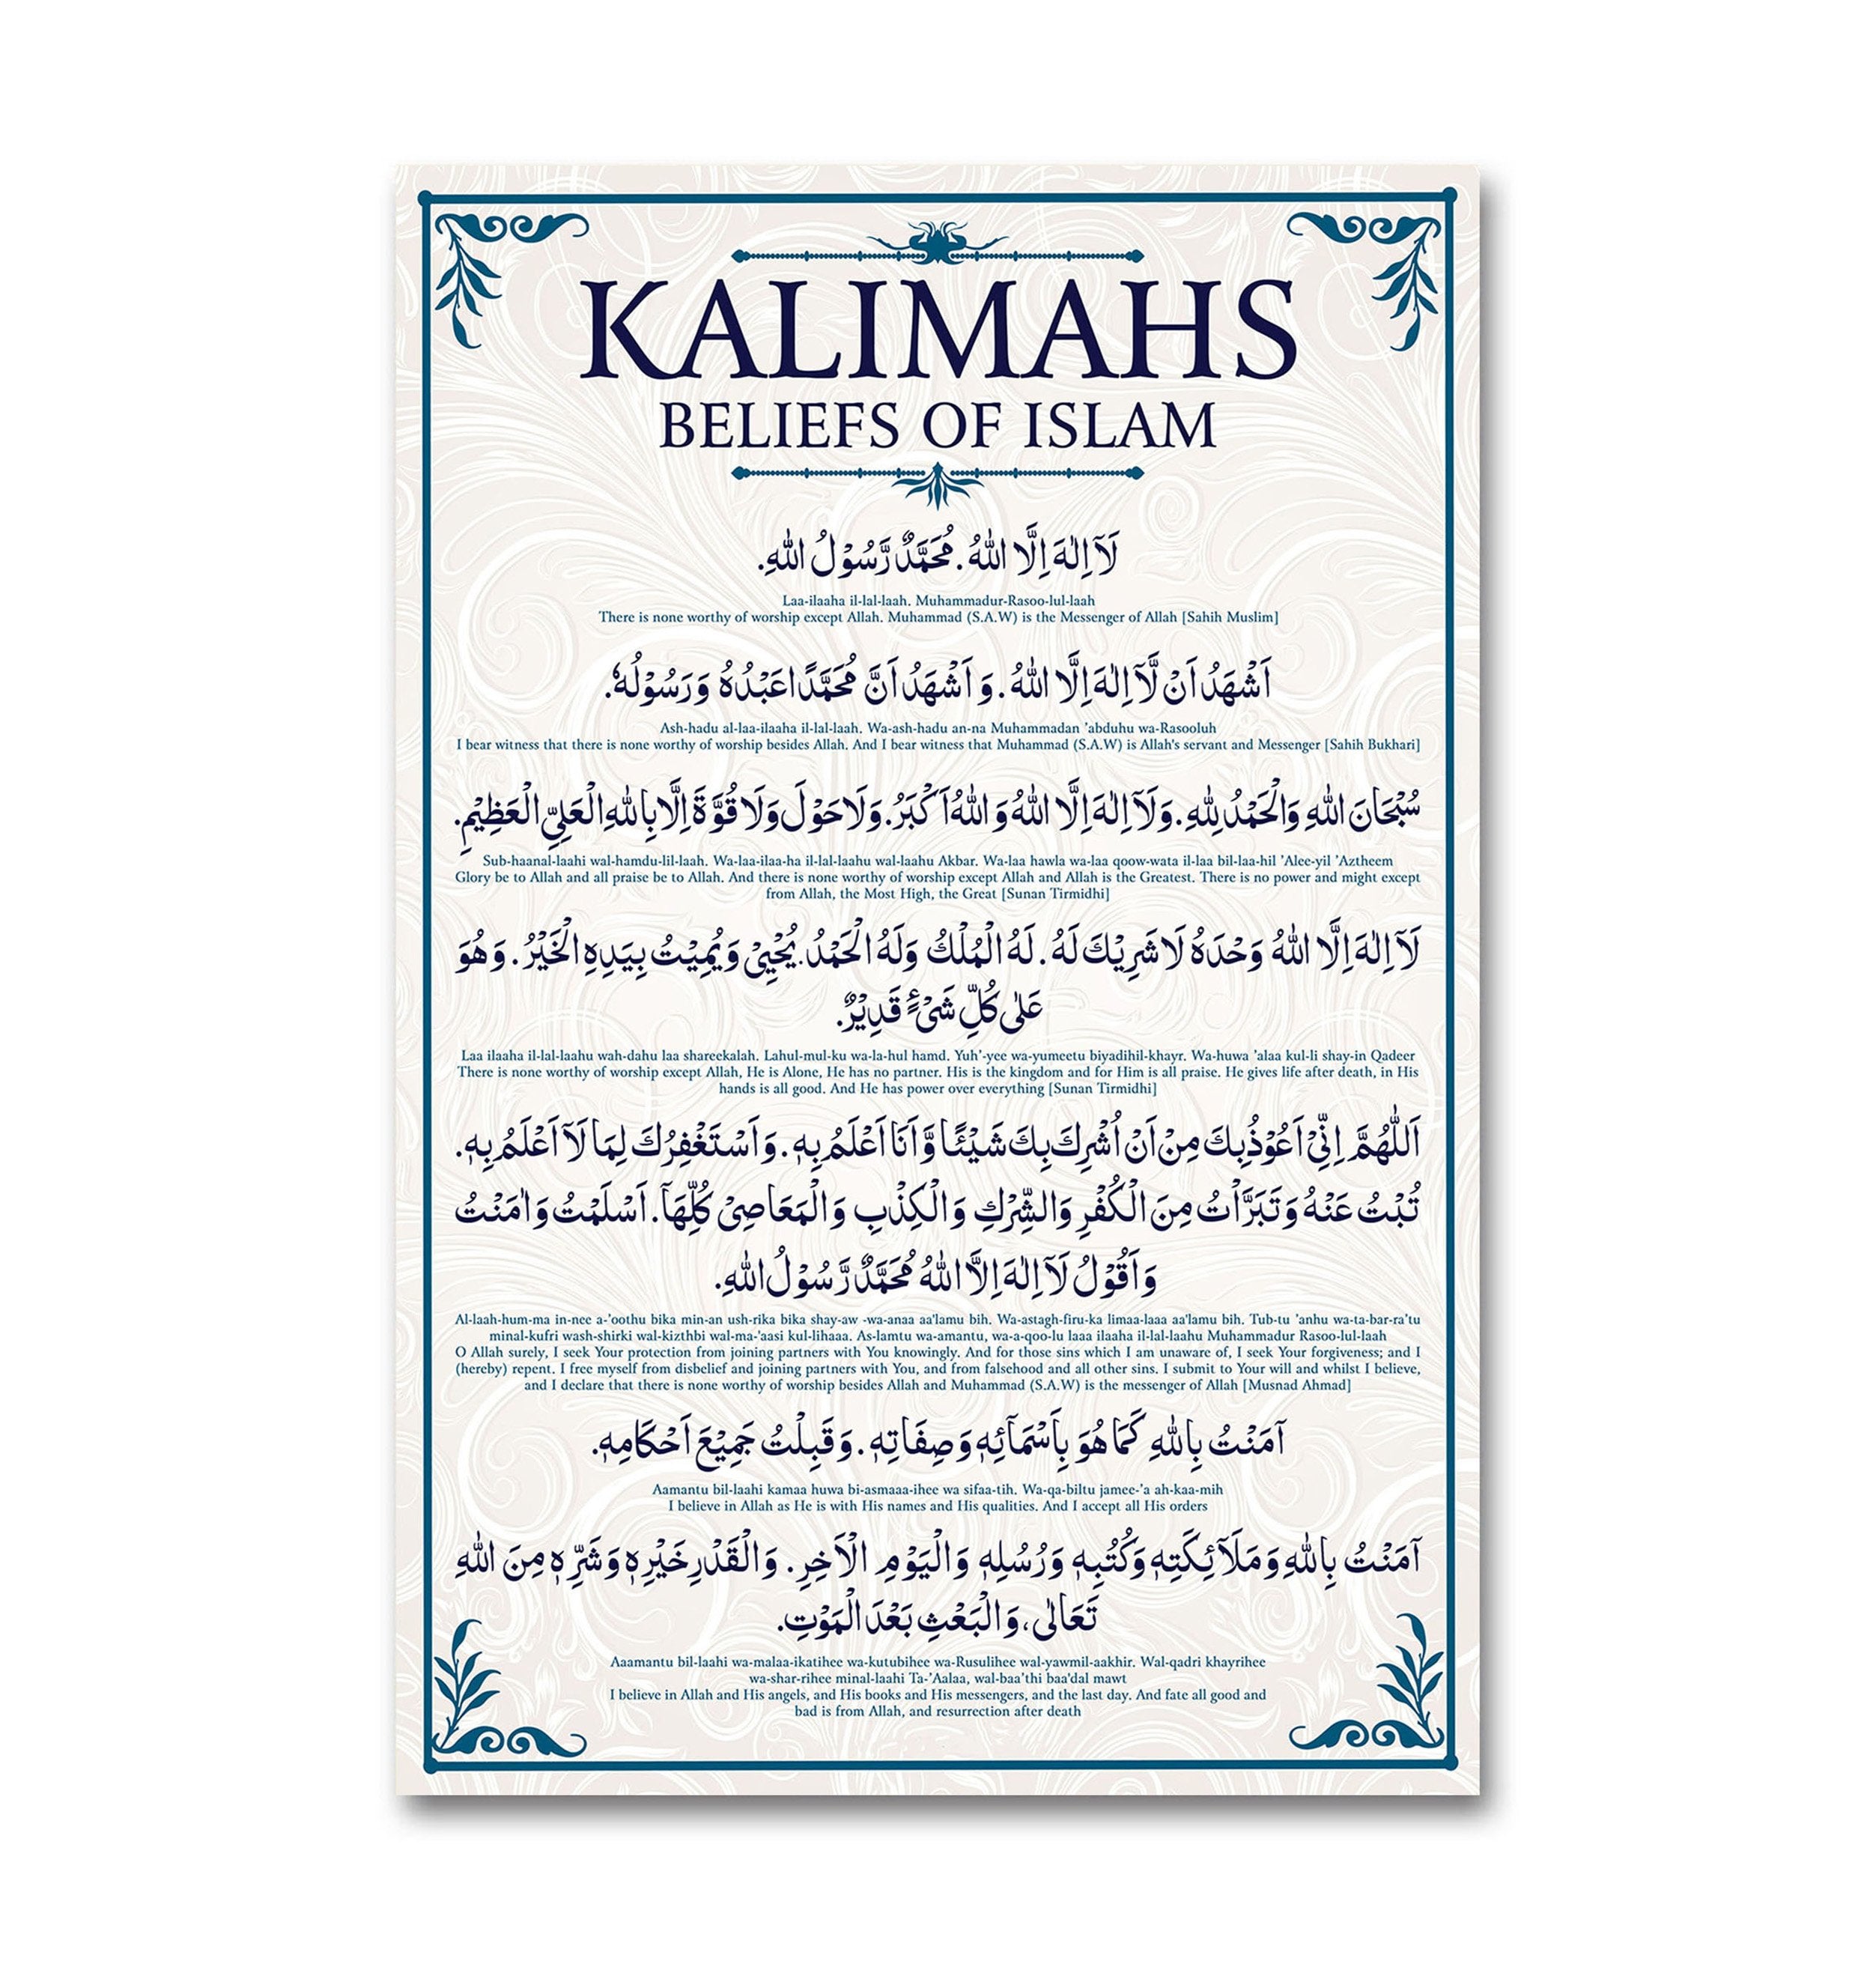 Kalimahs - Belief of Islam